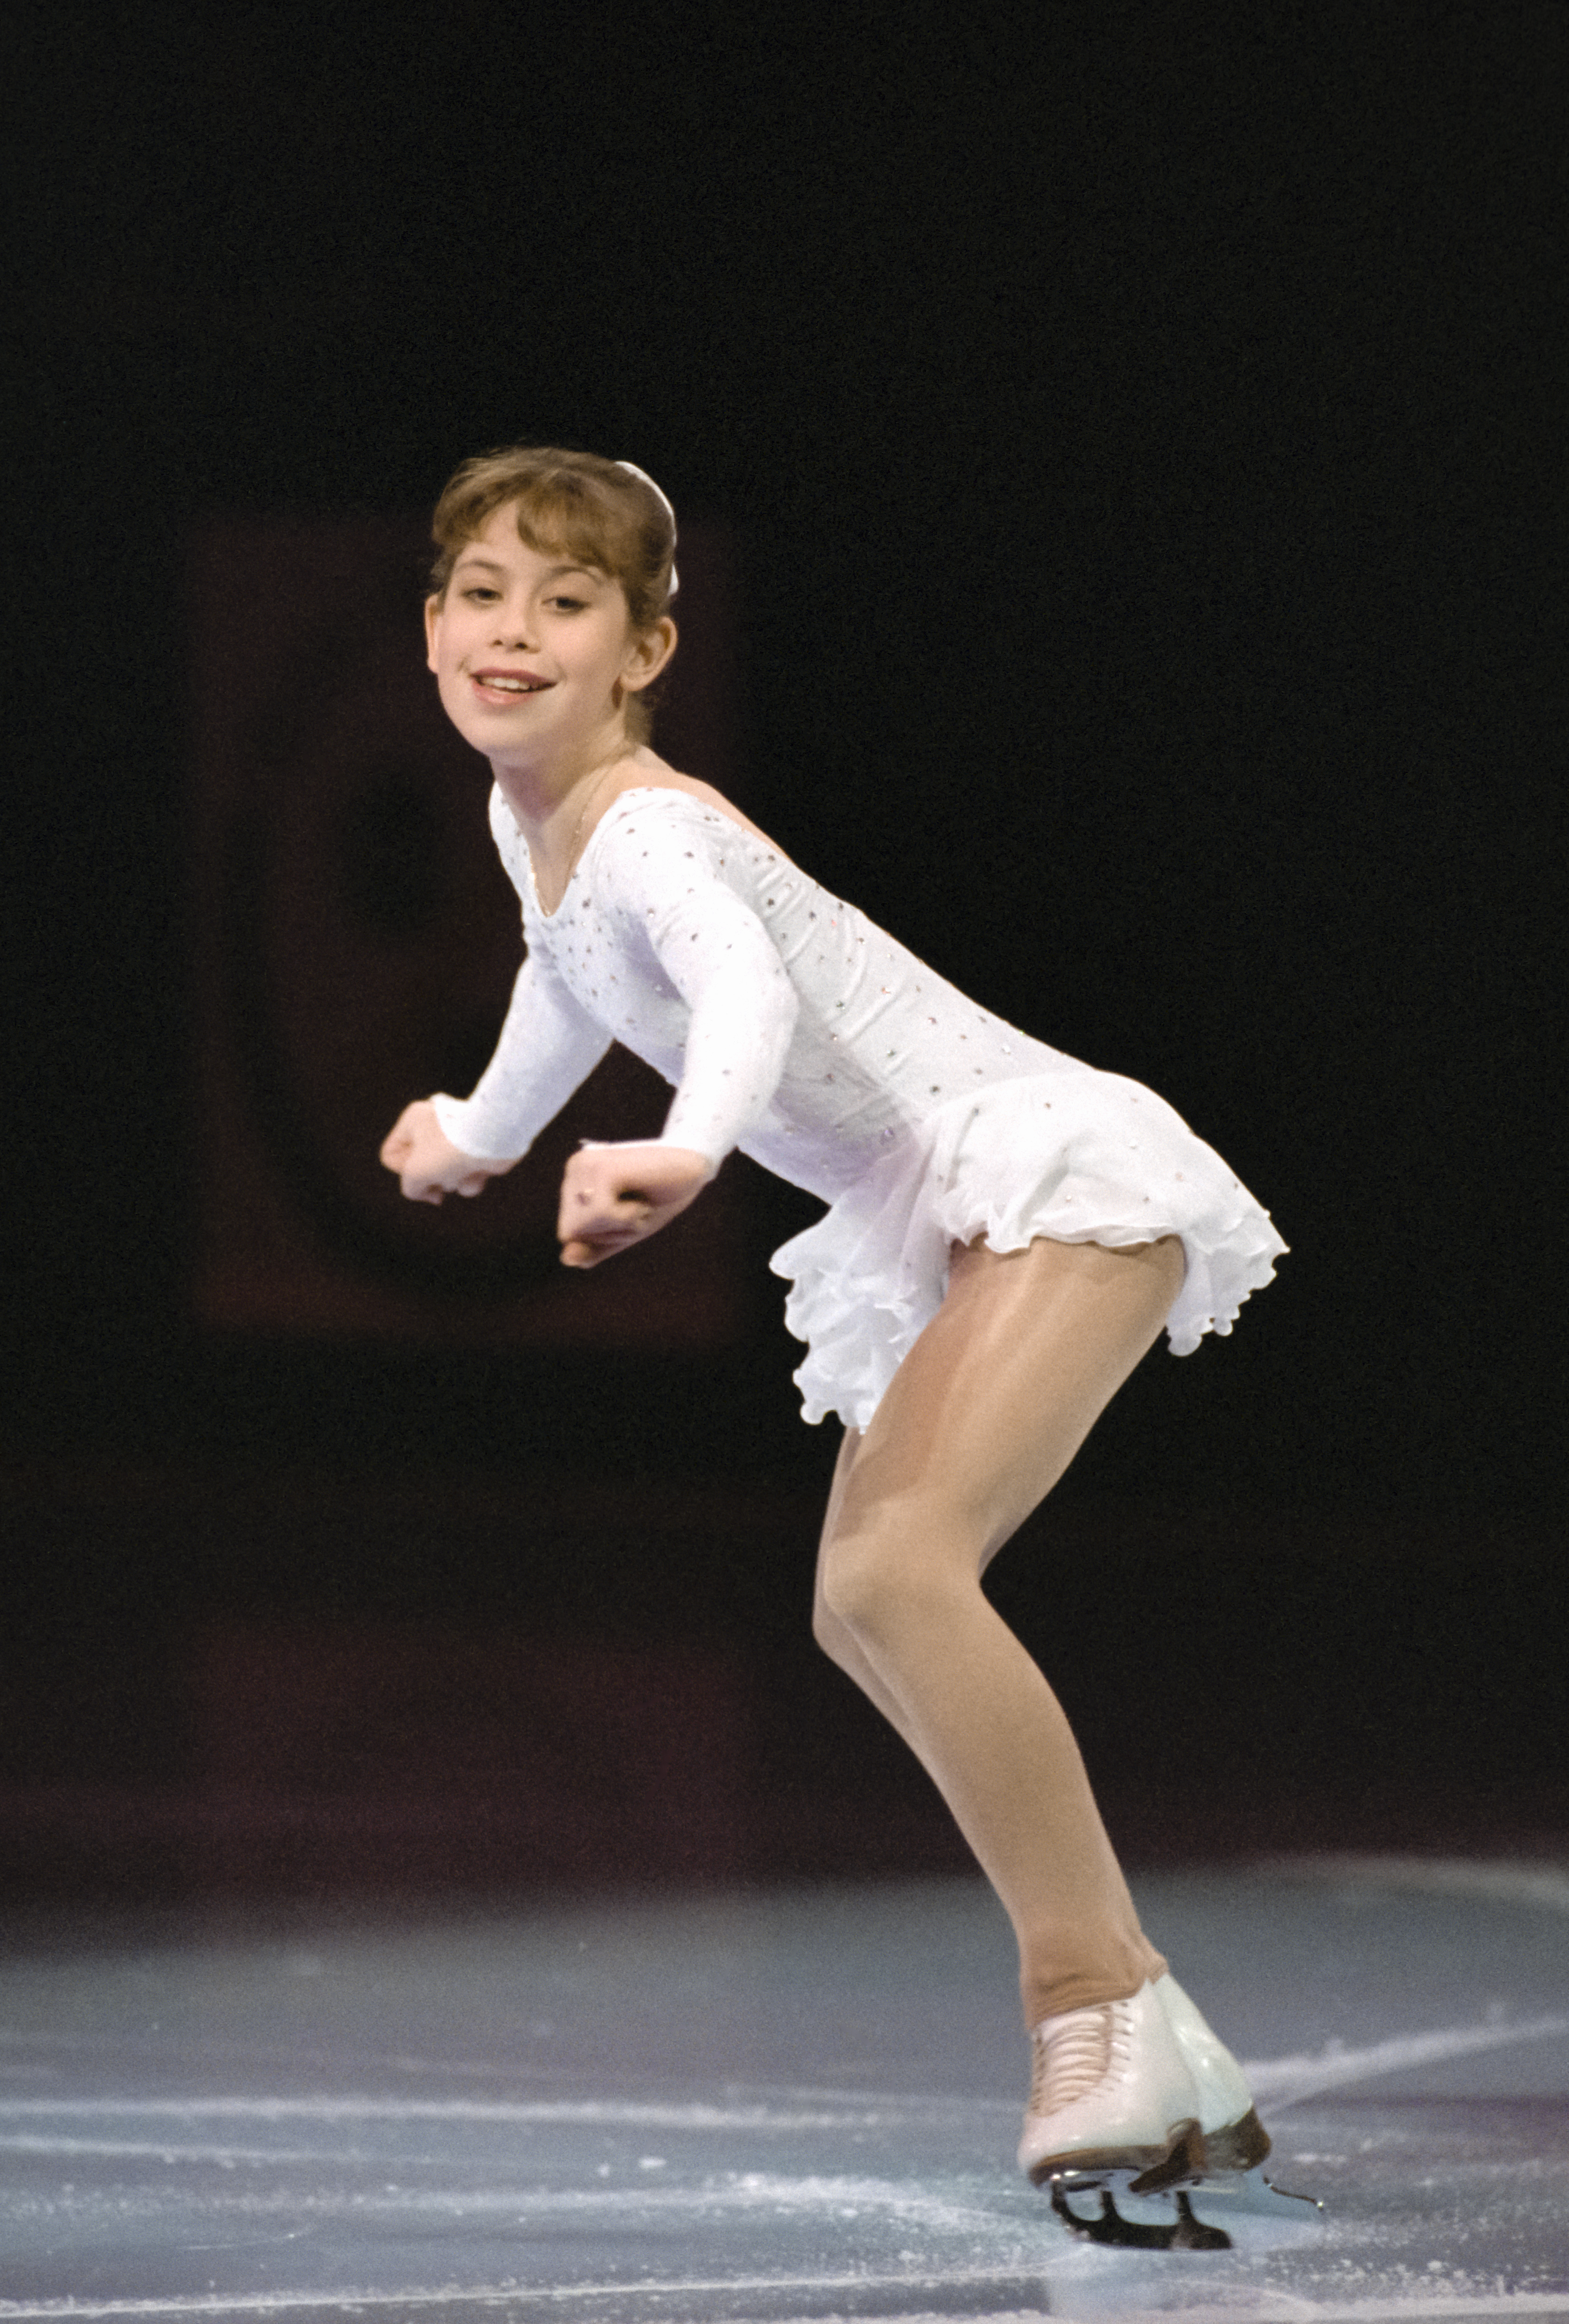 Tara Lipinski, représentant les États-Unis, se produit lors de l'exposition des championnats de patinage artistique des États-Unis de 1996, le 21 janvier 1996, à San Jose, Californie | Source : Getty Images